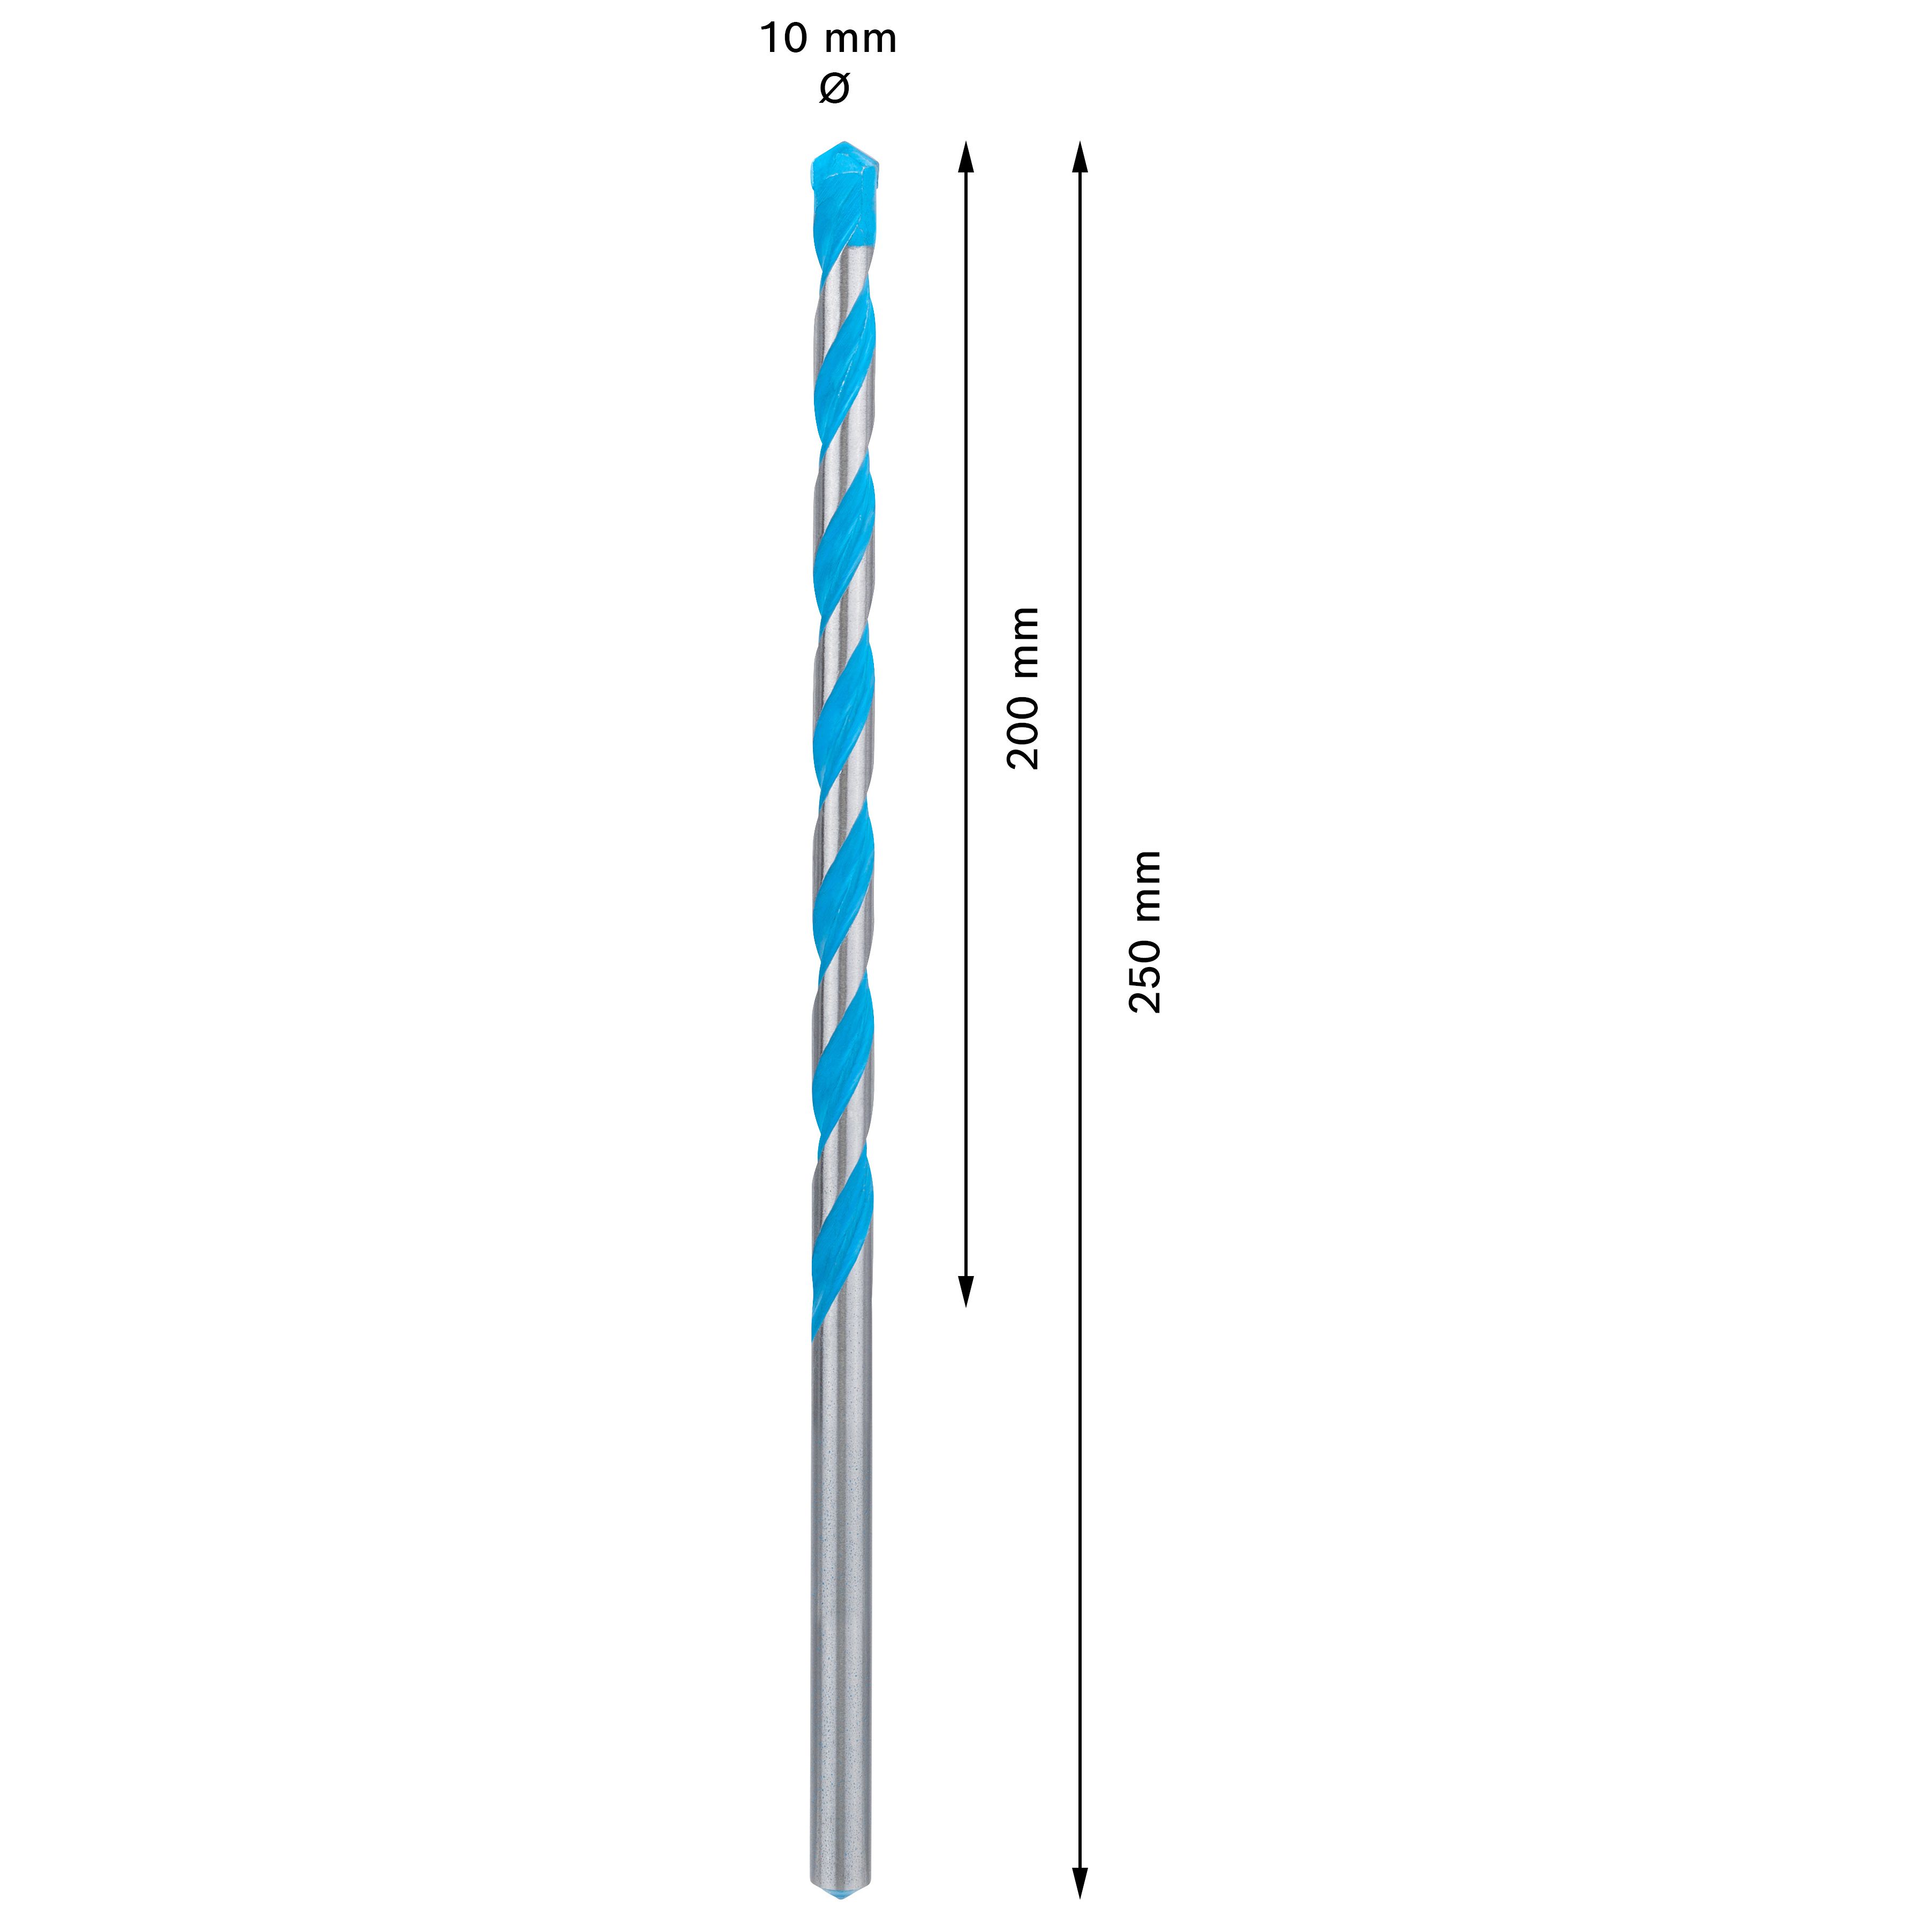 Bosch Straight Multi-purpose Drill bit (Dia)10mm